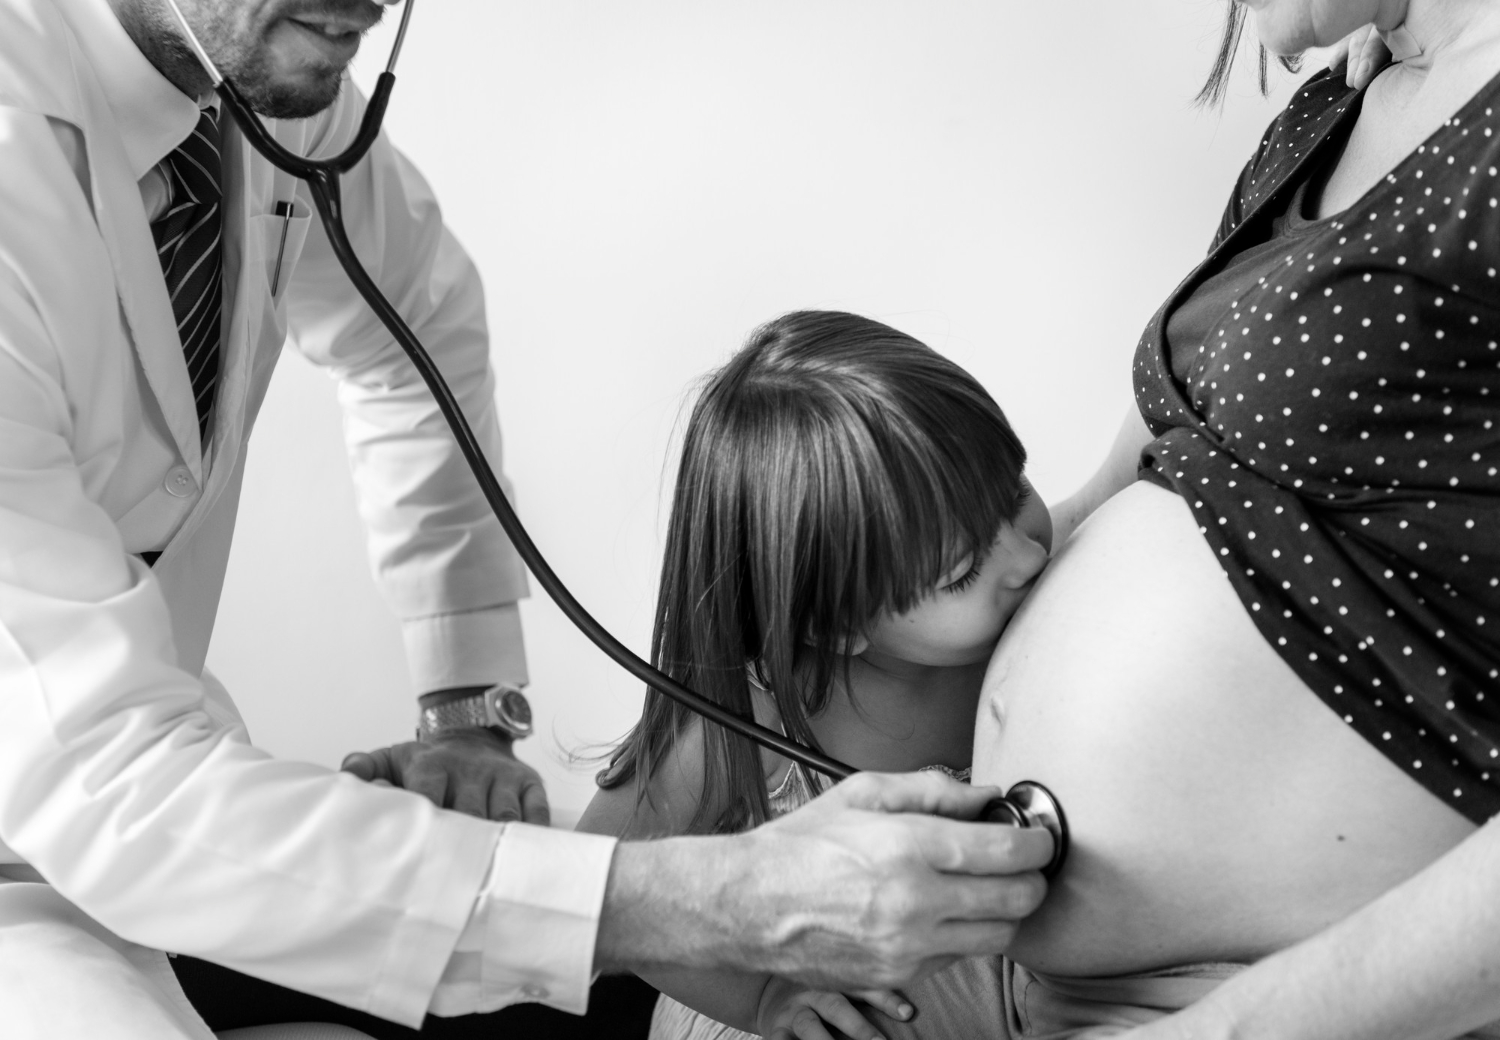 Многоплодная беременность повышает риски развития осложнений, приемы и консультации у акушер-гинеколога проводятся чаще